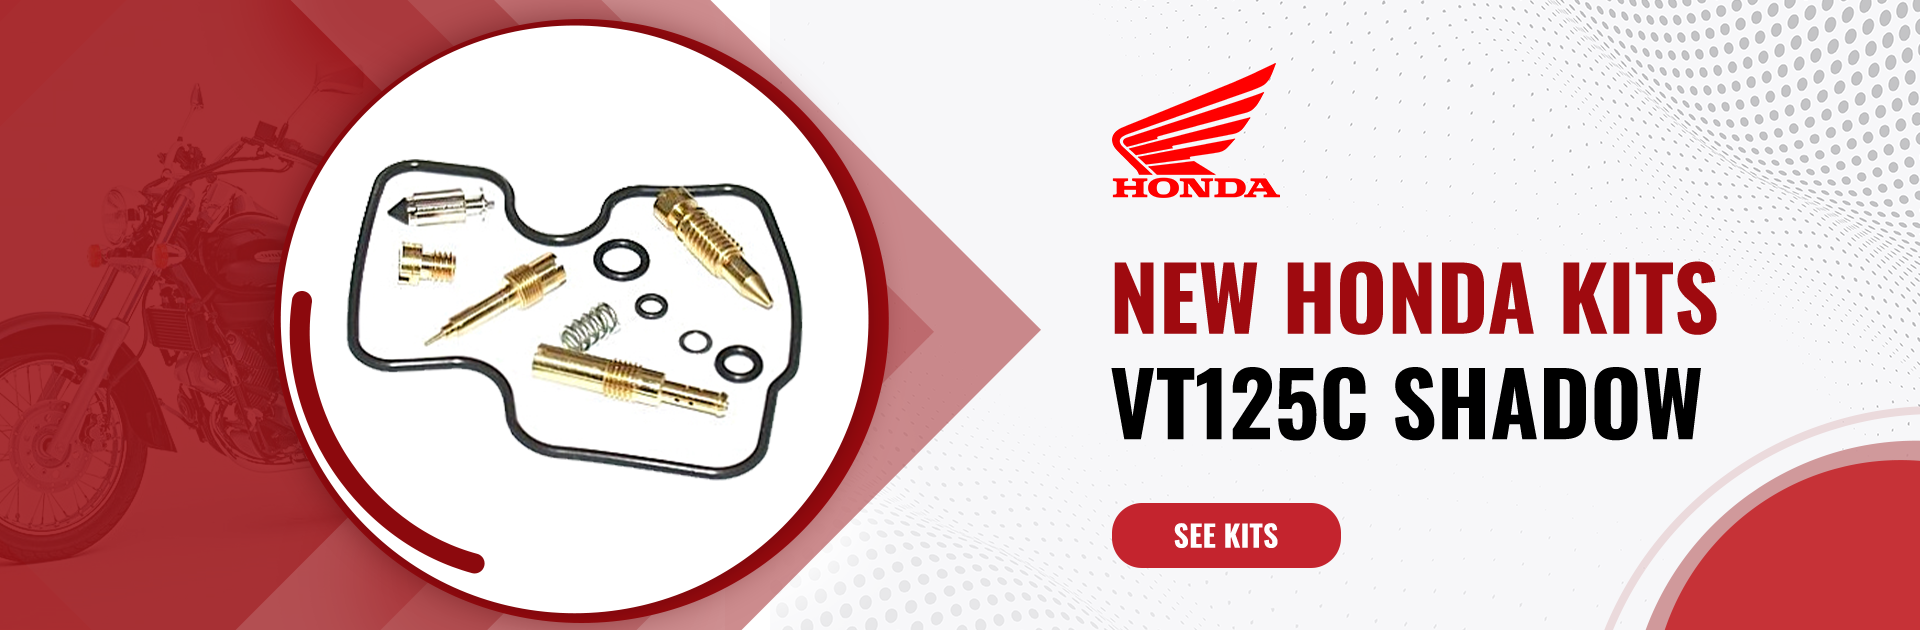 Nuevos Kits Honda VT125 Shadow